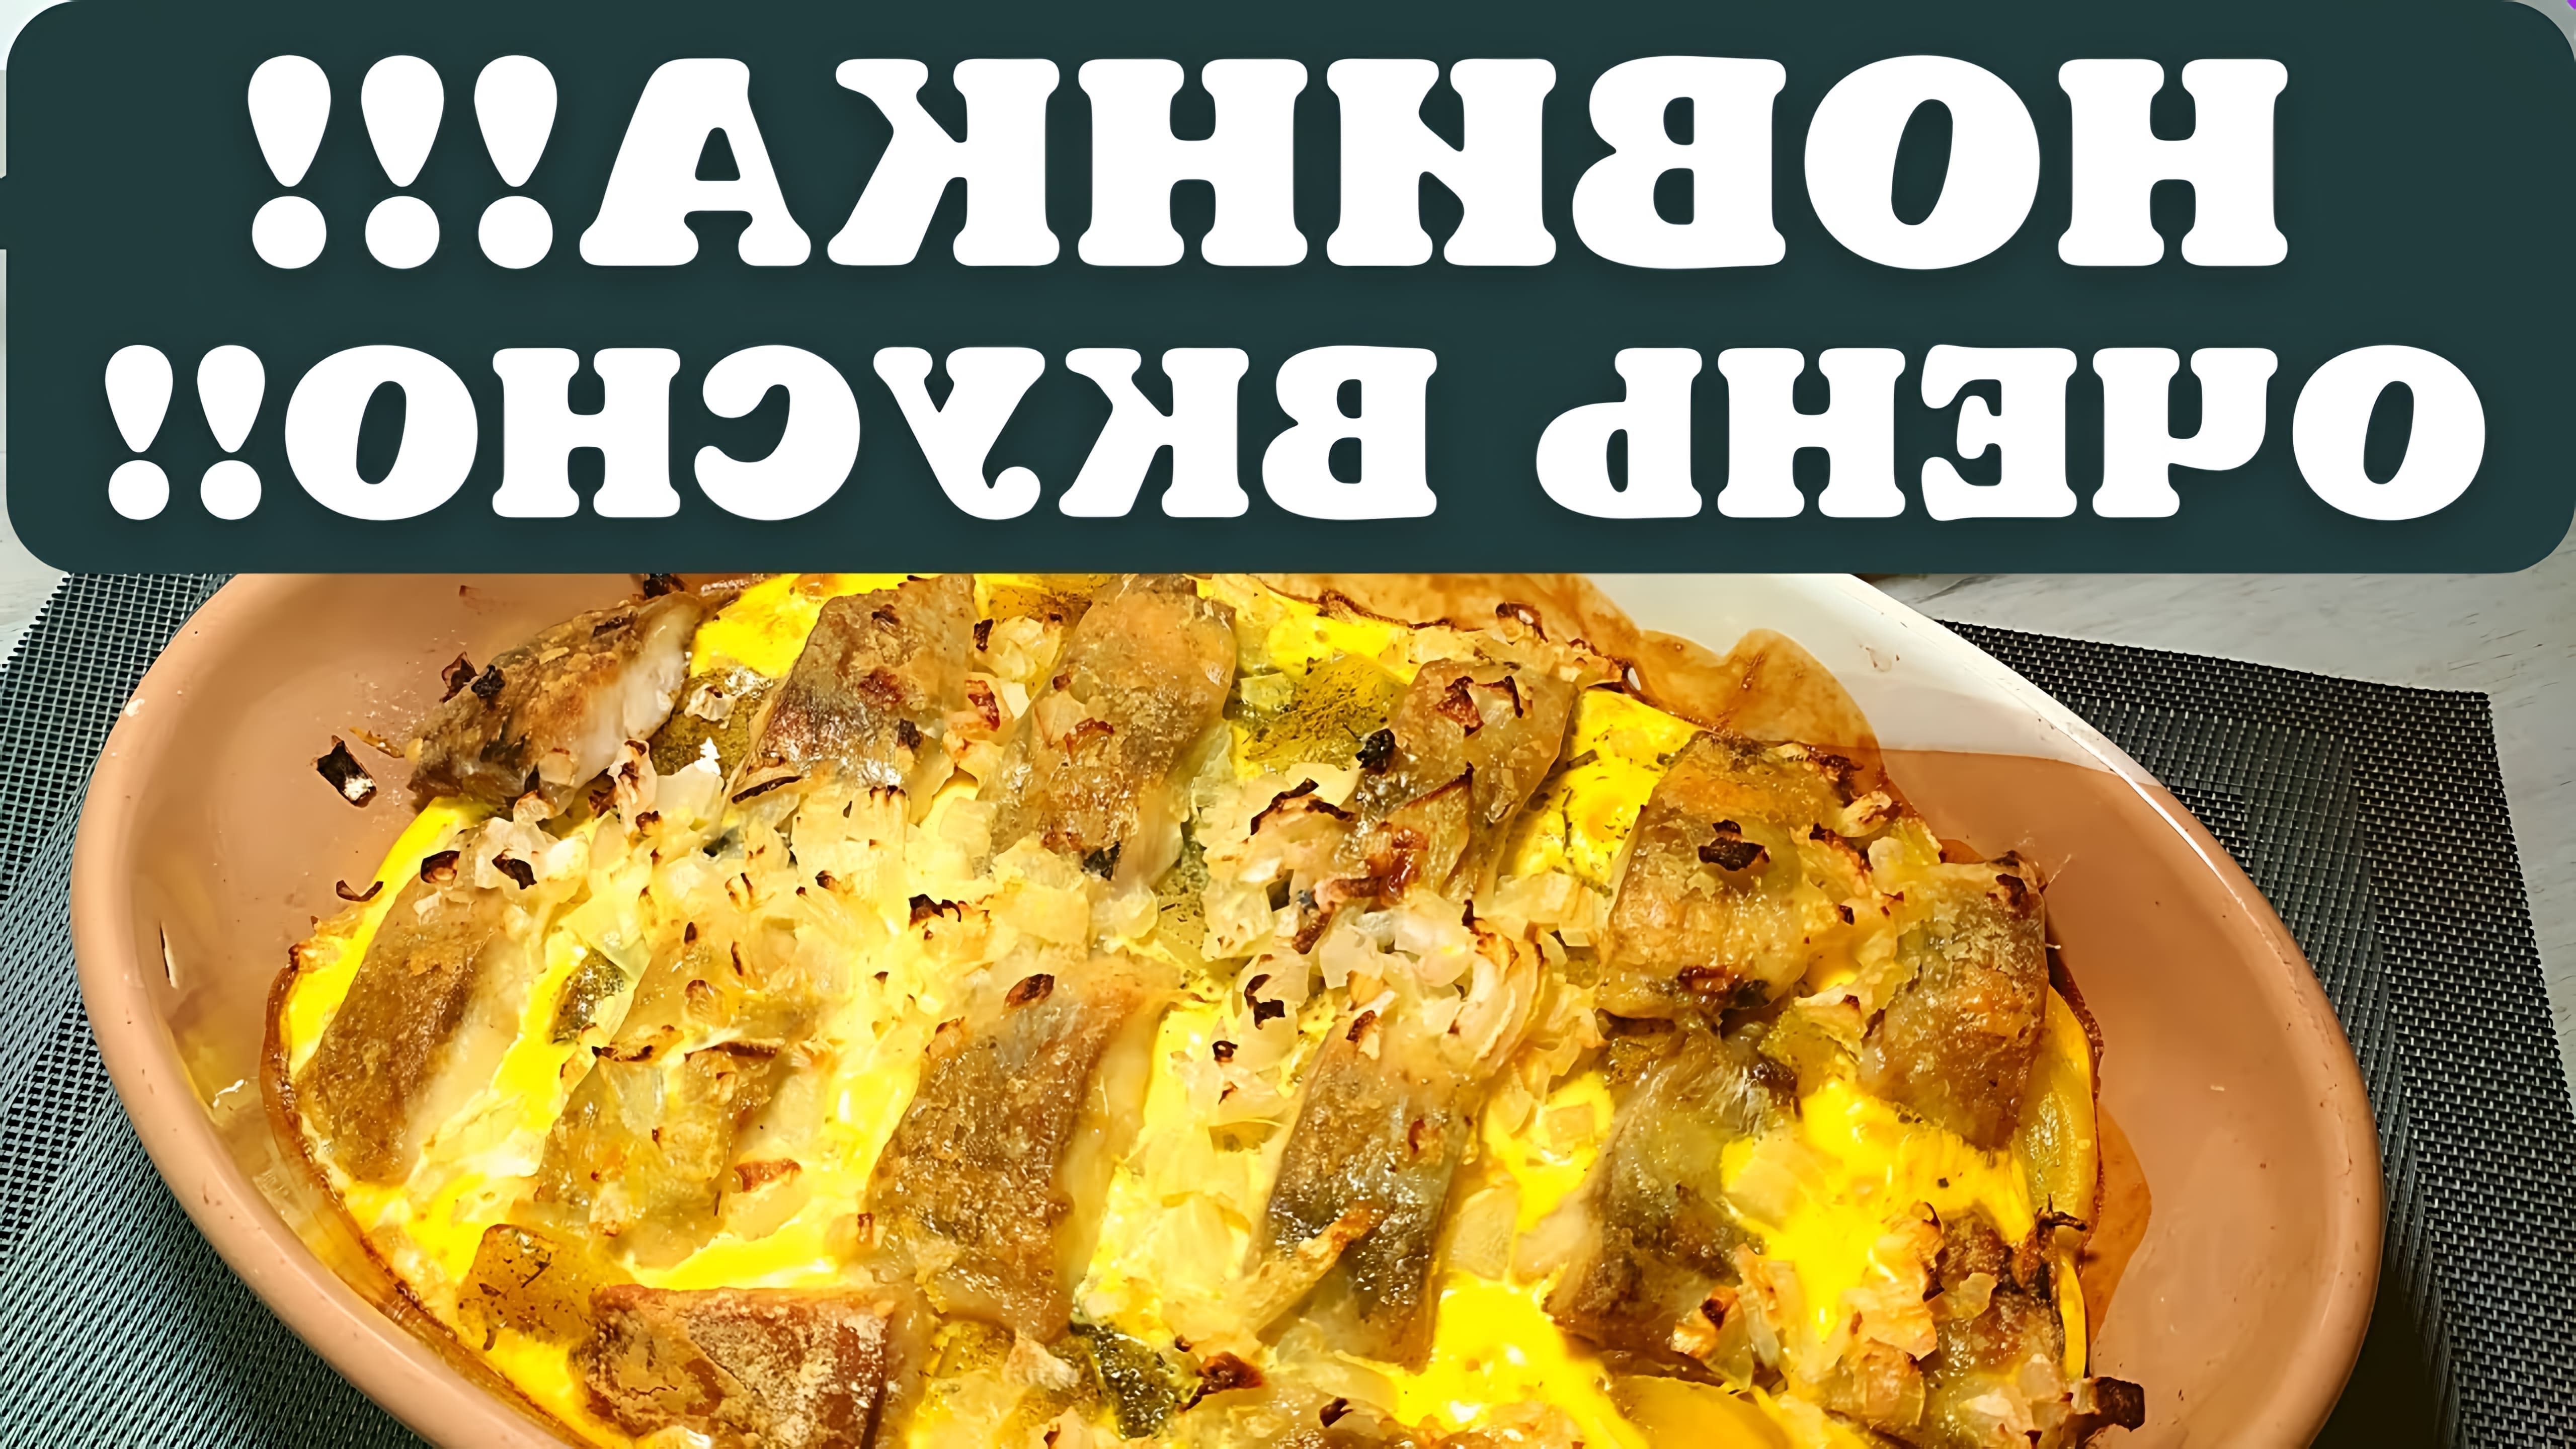 В этом видео демонстрируется рецепт приготовления селедки с картошкой в духовке по-фински